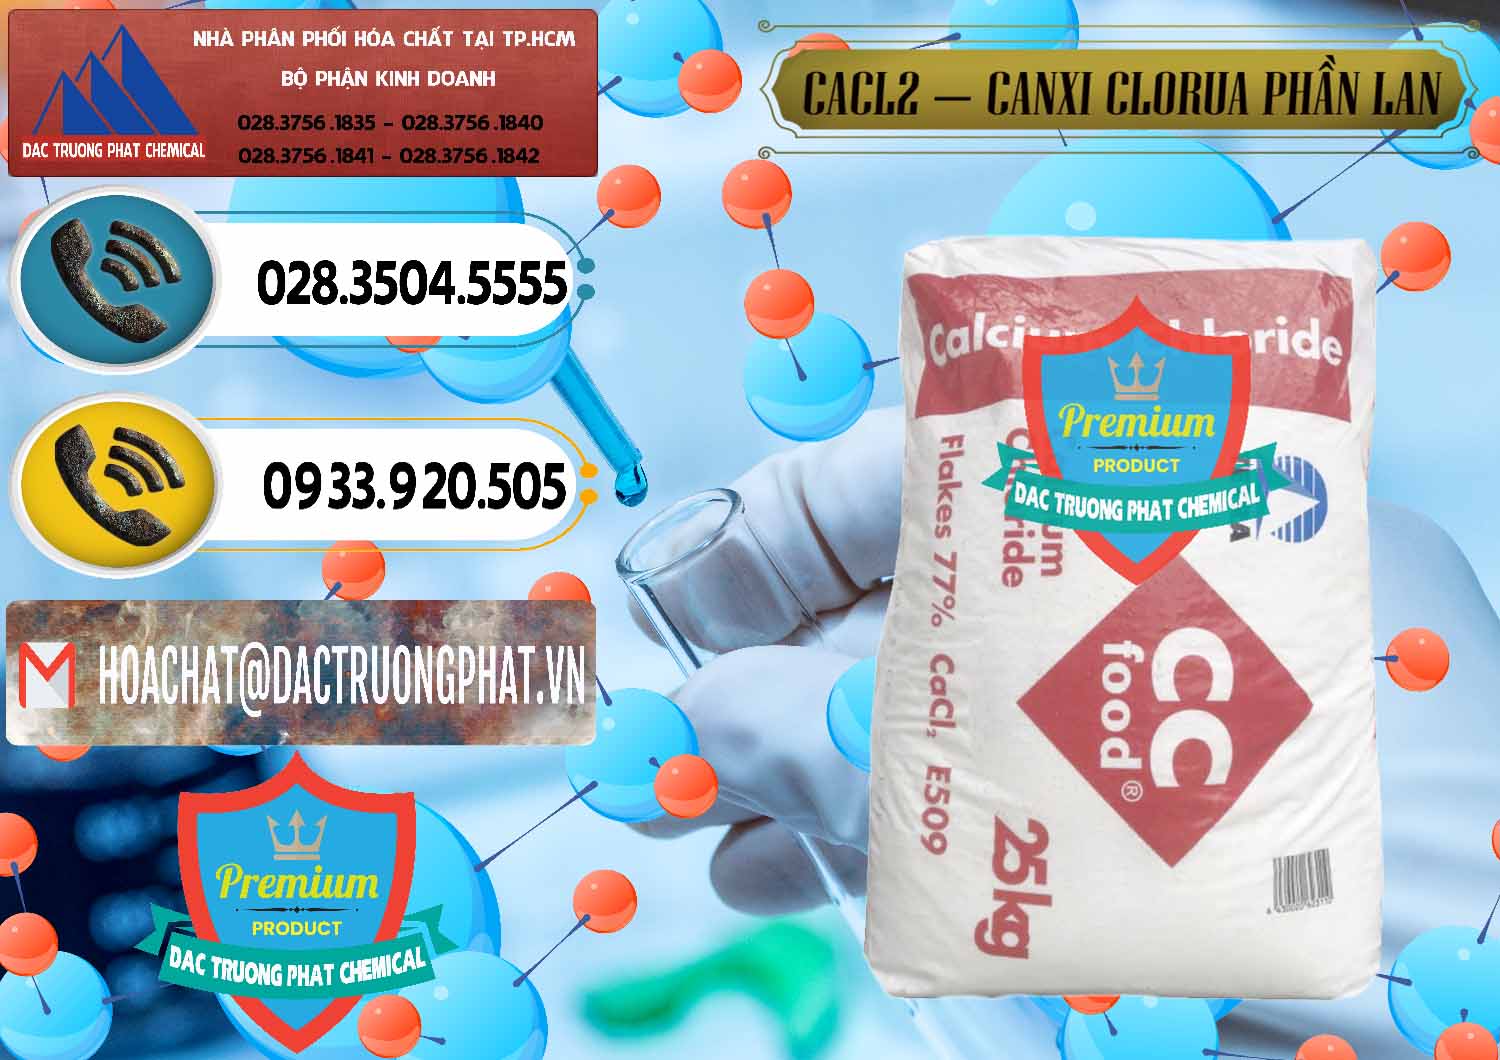 Đơn vị chuyên bán ( cung ứng ) CaCl2 – Canxi Clorua Dạng Vảy 77% Tetra Phần Lan Finland - 0353 - Đơn vị kinh doanh & cung cấp hóa chất tại TP.HCM - hoachatdetnhuom.vn